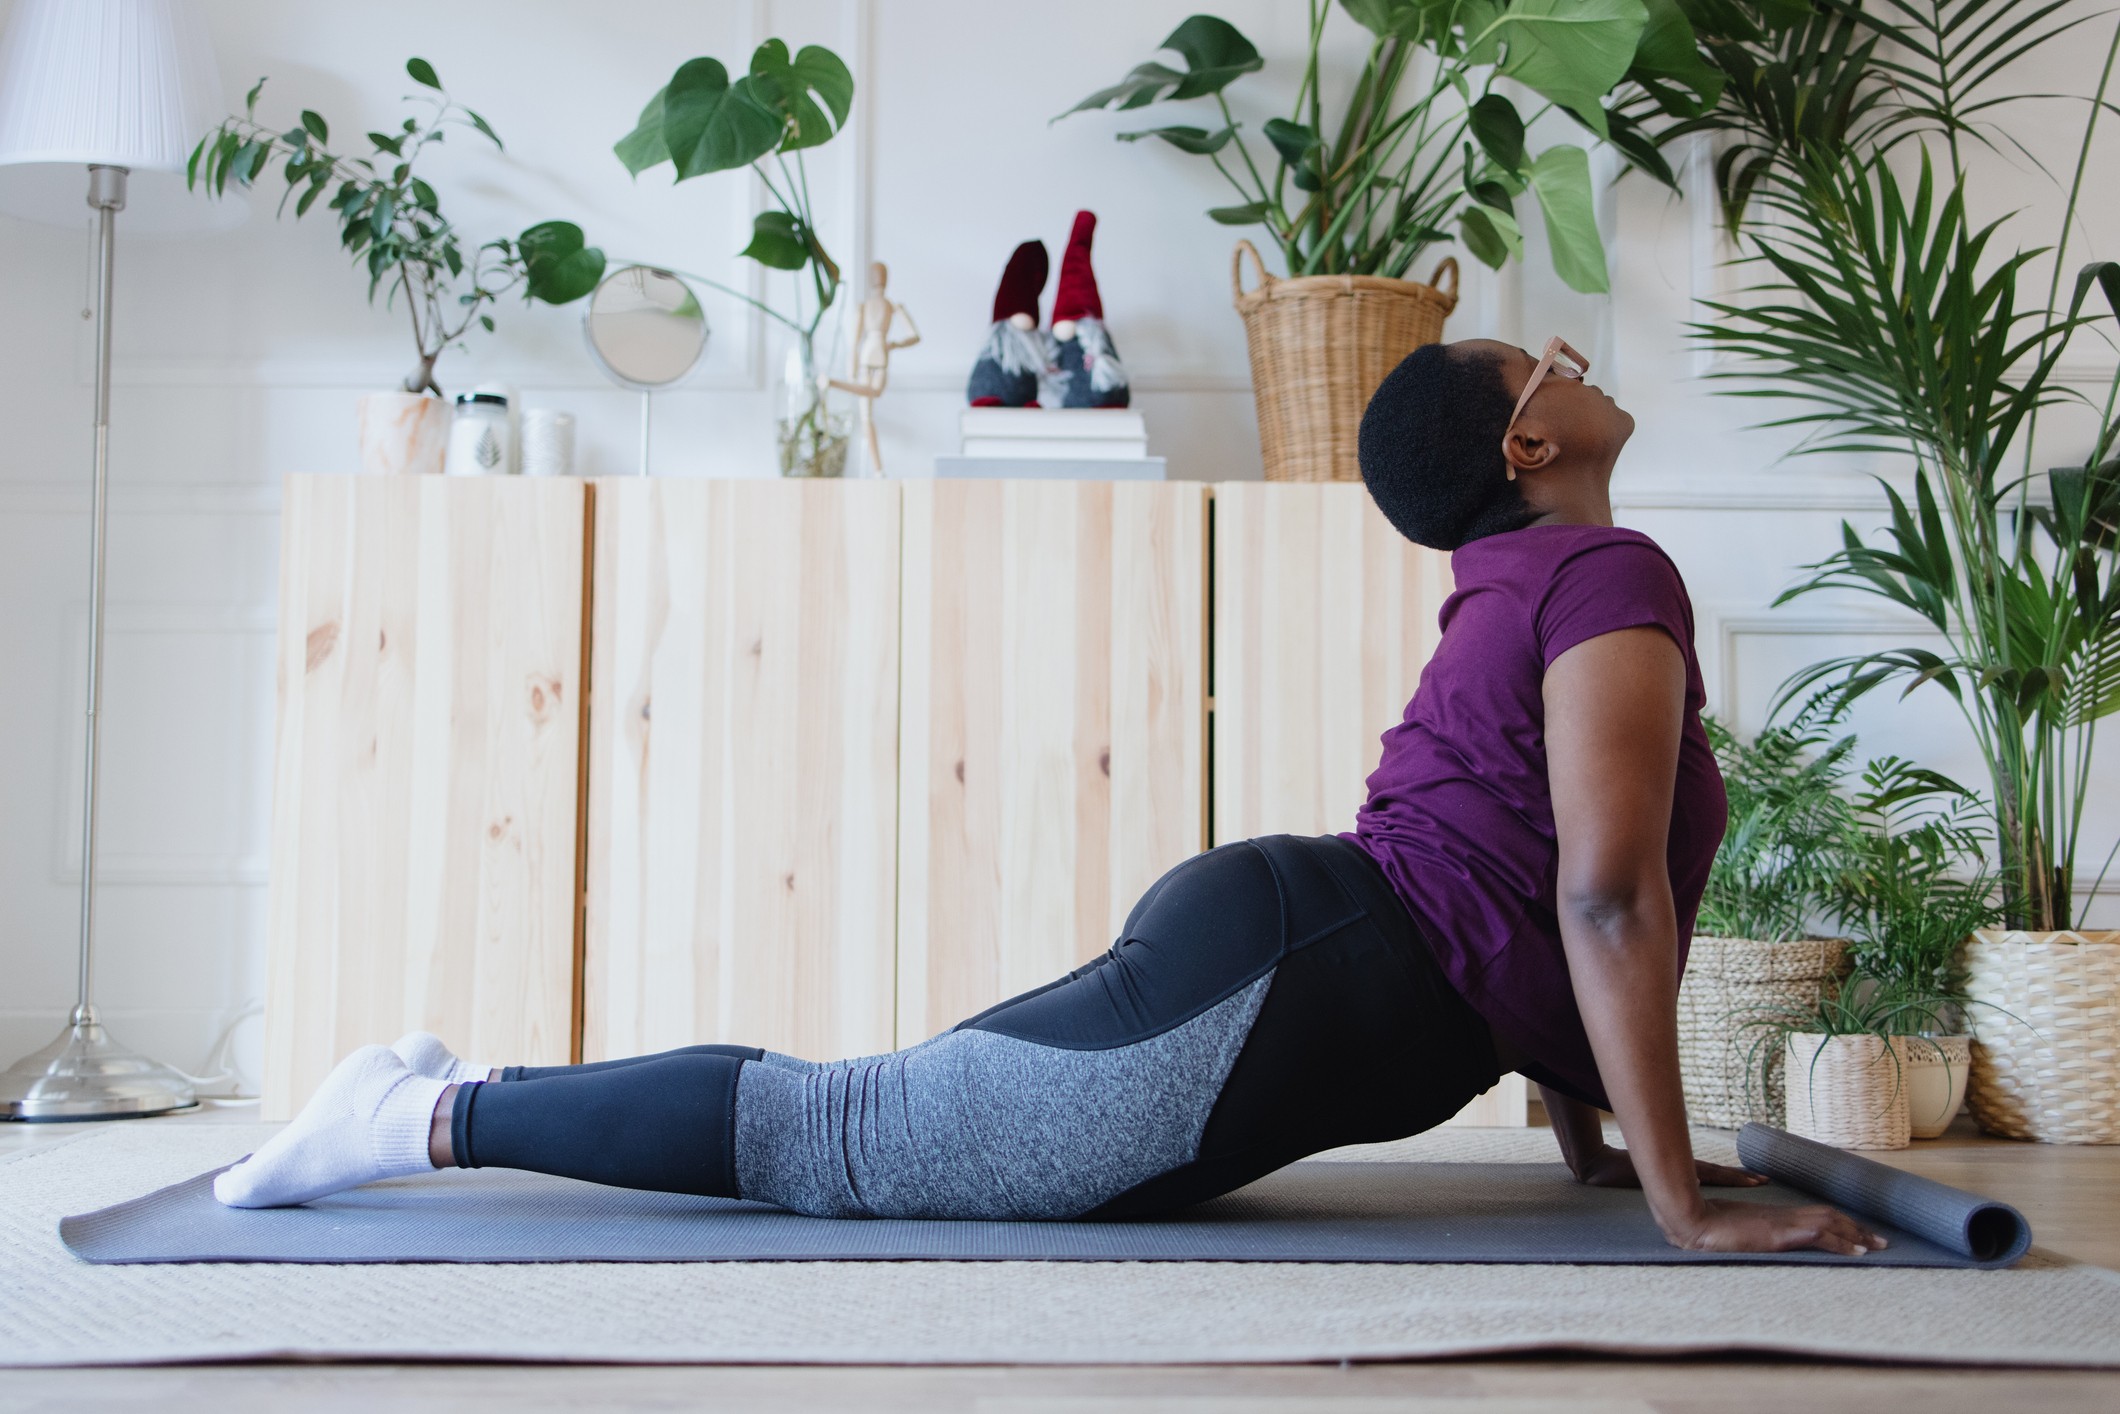 Hot yoga pode ajudar no combate à depressão, diz estudo